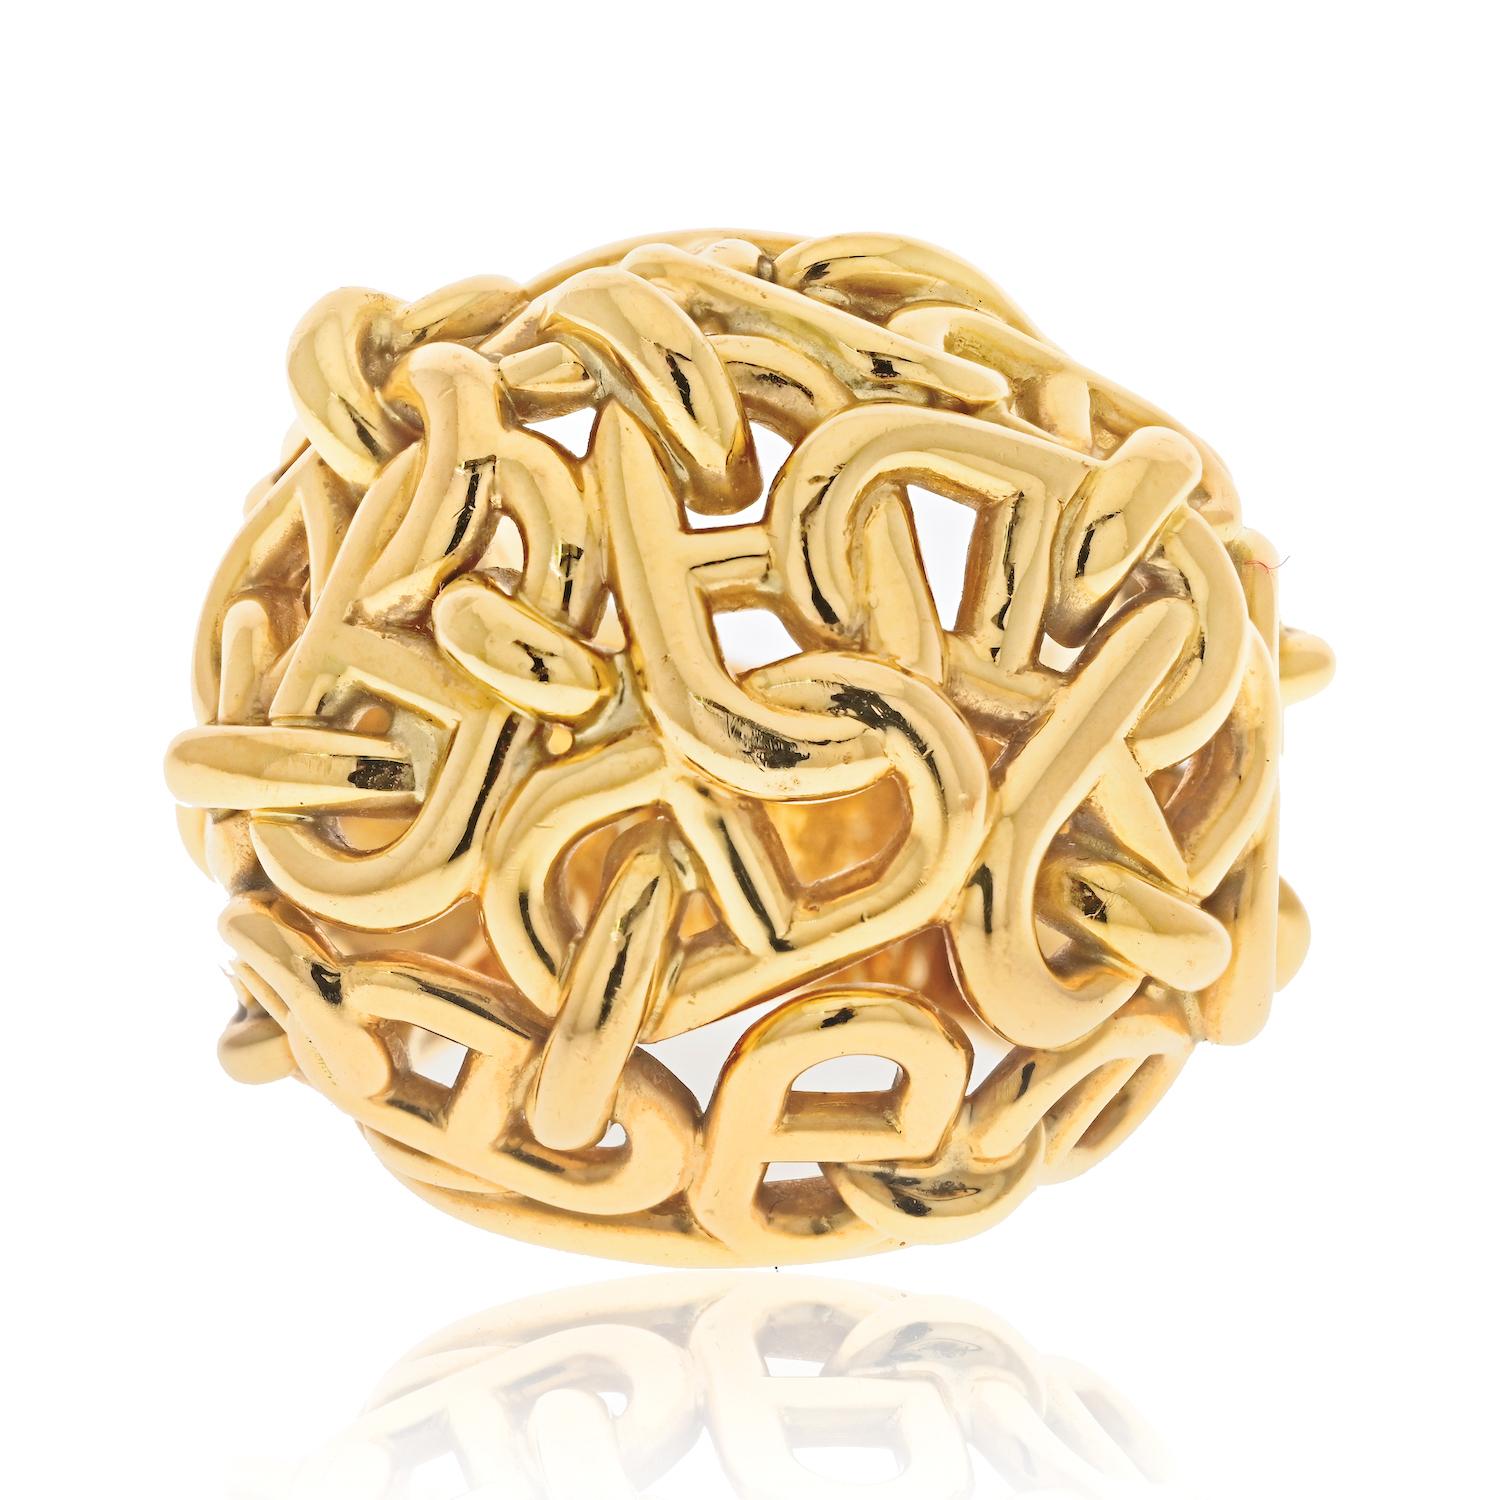 Hermes 18K Gelbgold Chaîne d'Ancre Kuppel Cocktail Ring.

Dieser Ring aus Gelbgold von Hermes ist ein wahres Kunstwerk und ein Beweis für das Engagement der Marke für Handwerkskunst und Design. 

Der 46,7 Gramm schwere Ring hat ein kuppelförmiges